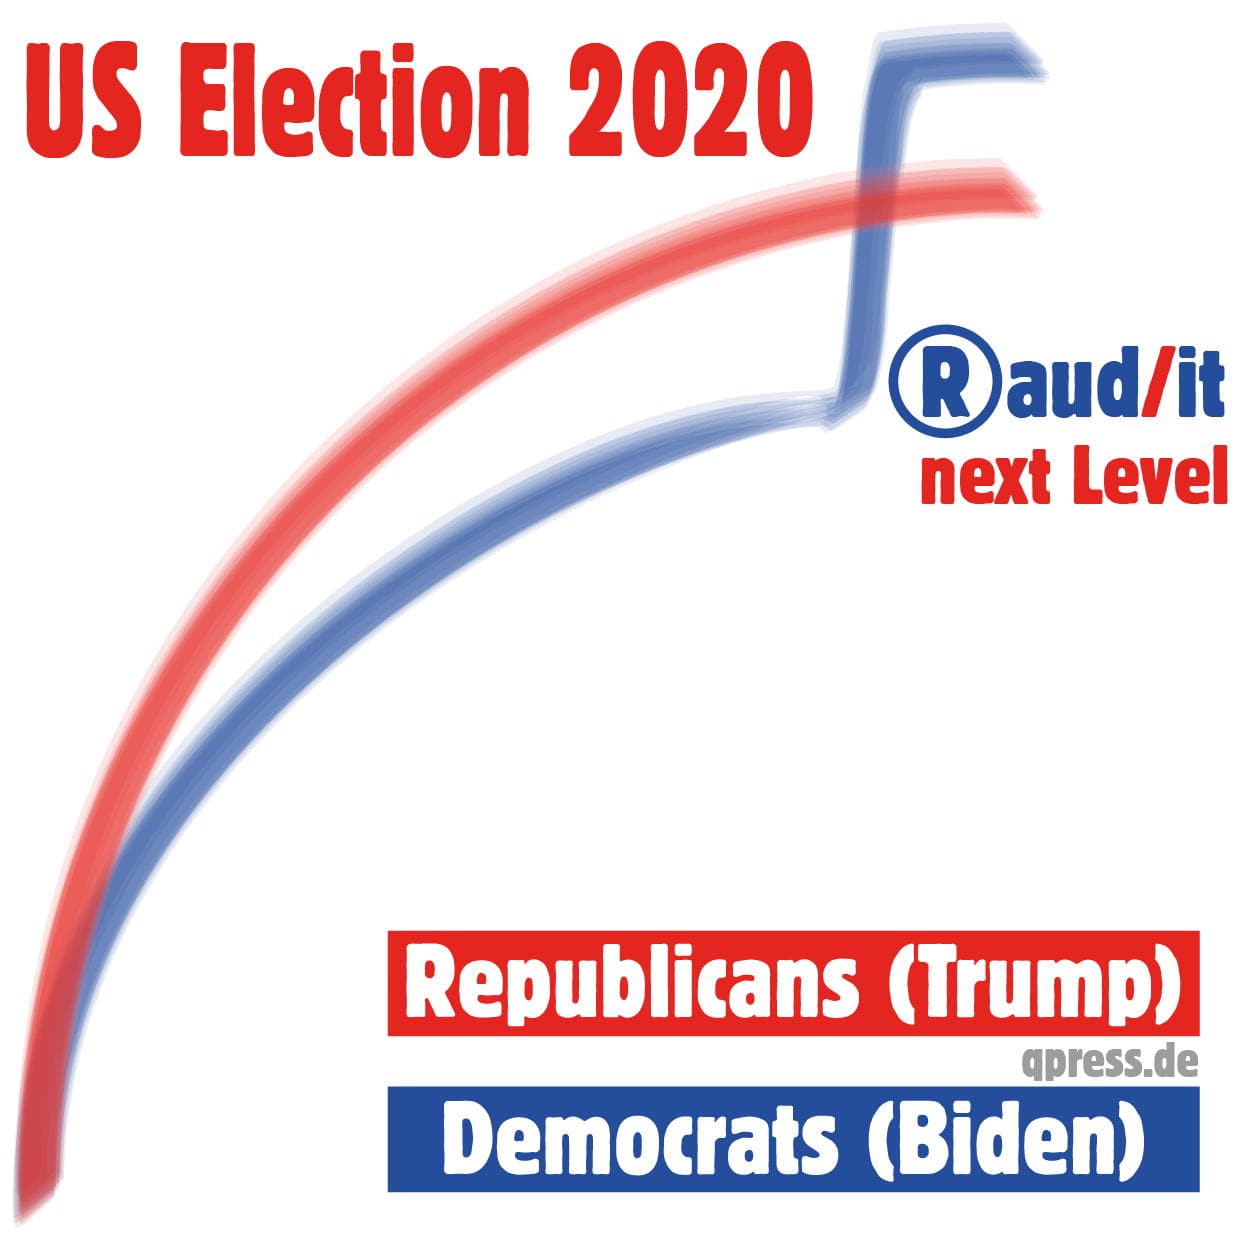 US Election 2020 Fraud audit next Level Biden Trump Republicans Democrats